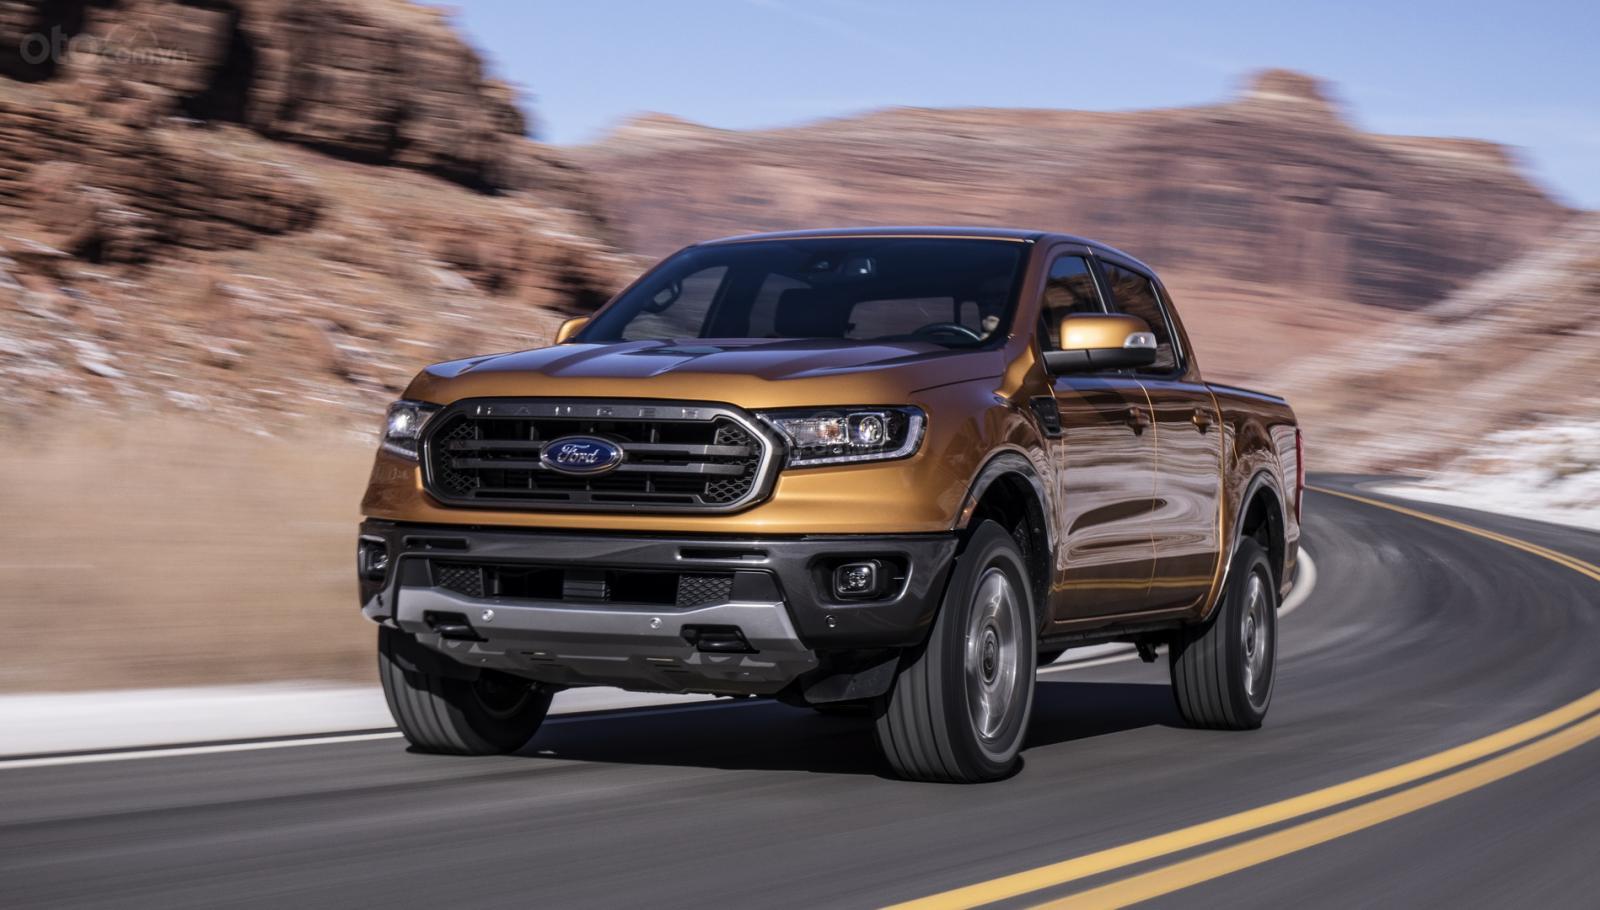 Ford Ranger 2019 và Fusion bị triệu hồi do nguy cơ hỏng hộp số, lăn xe khi đỗ